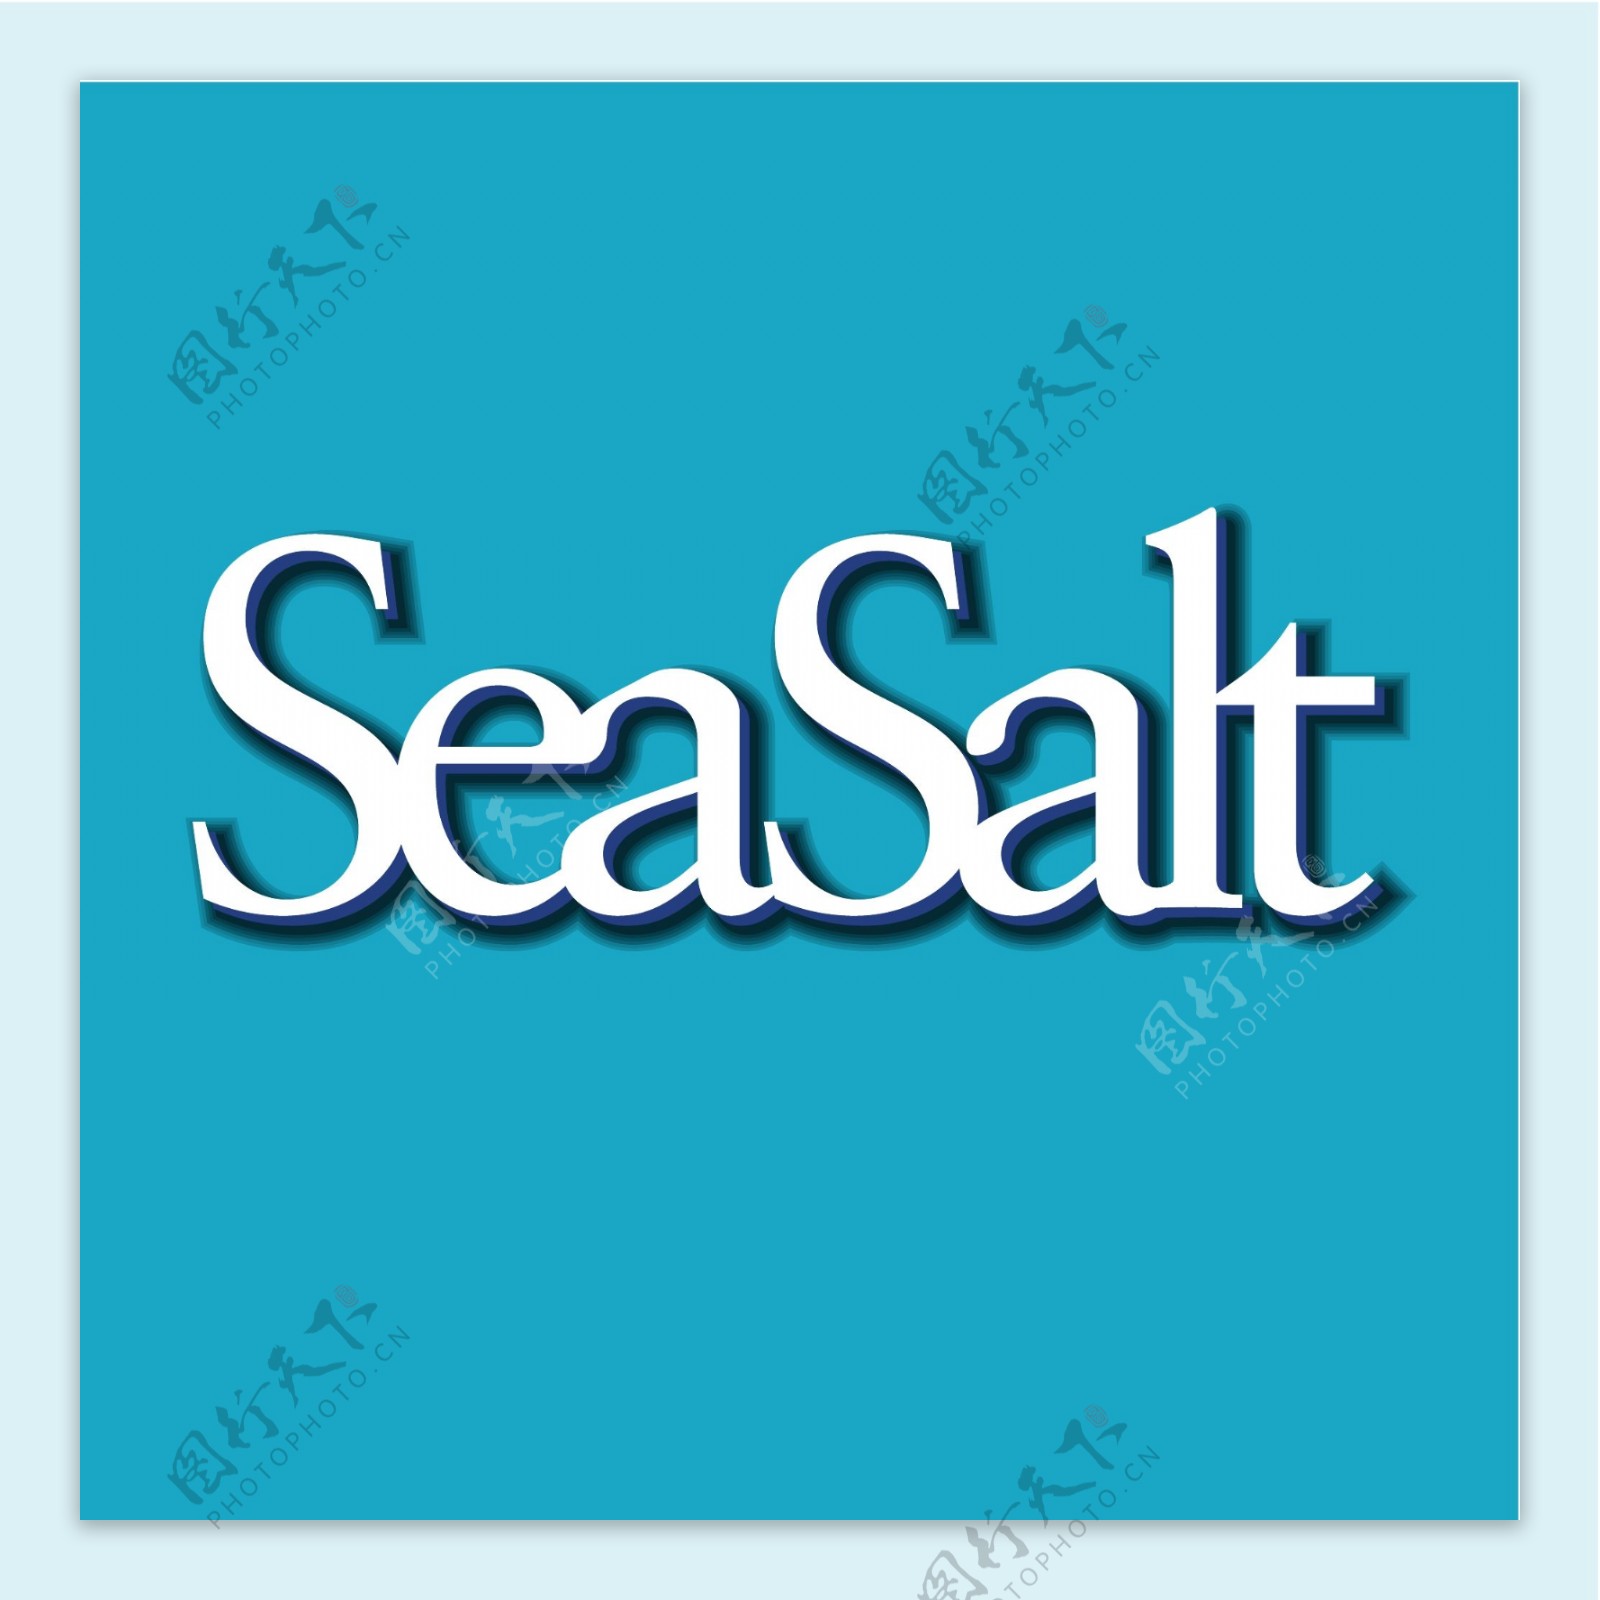 海盐